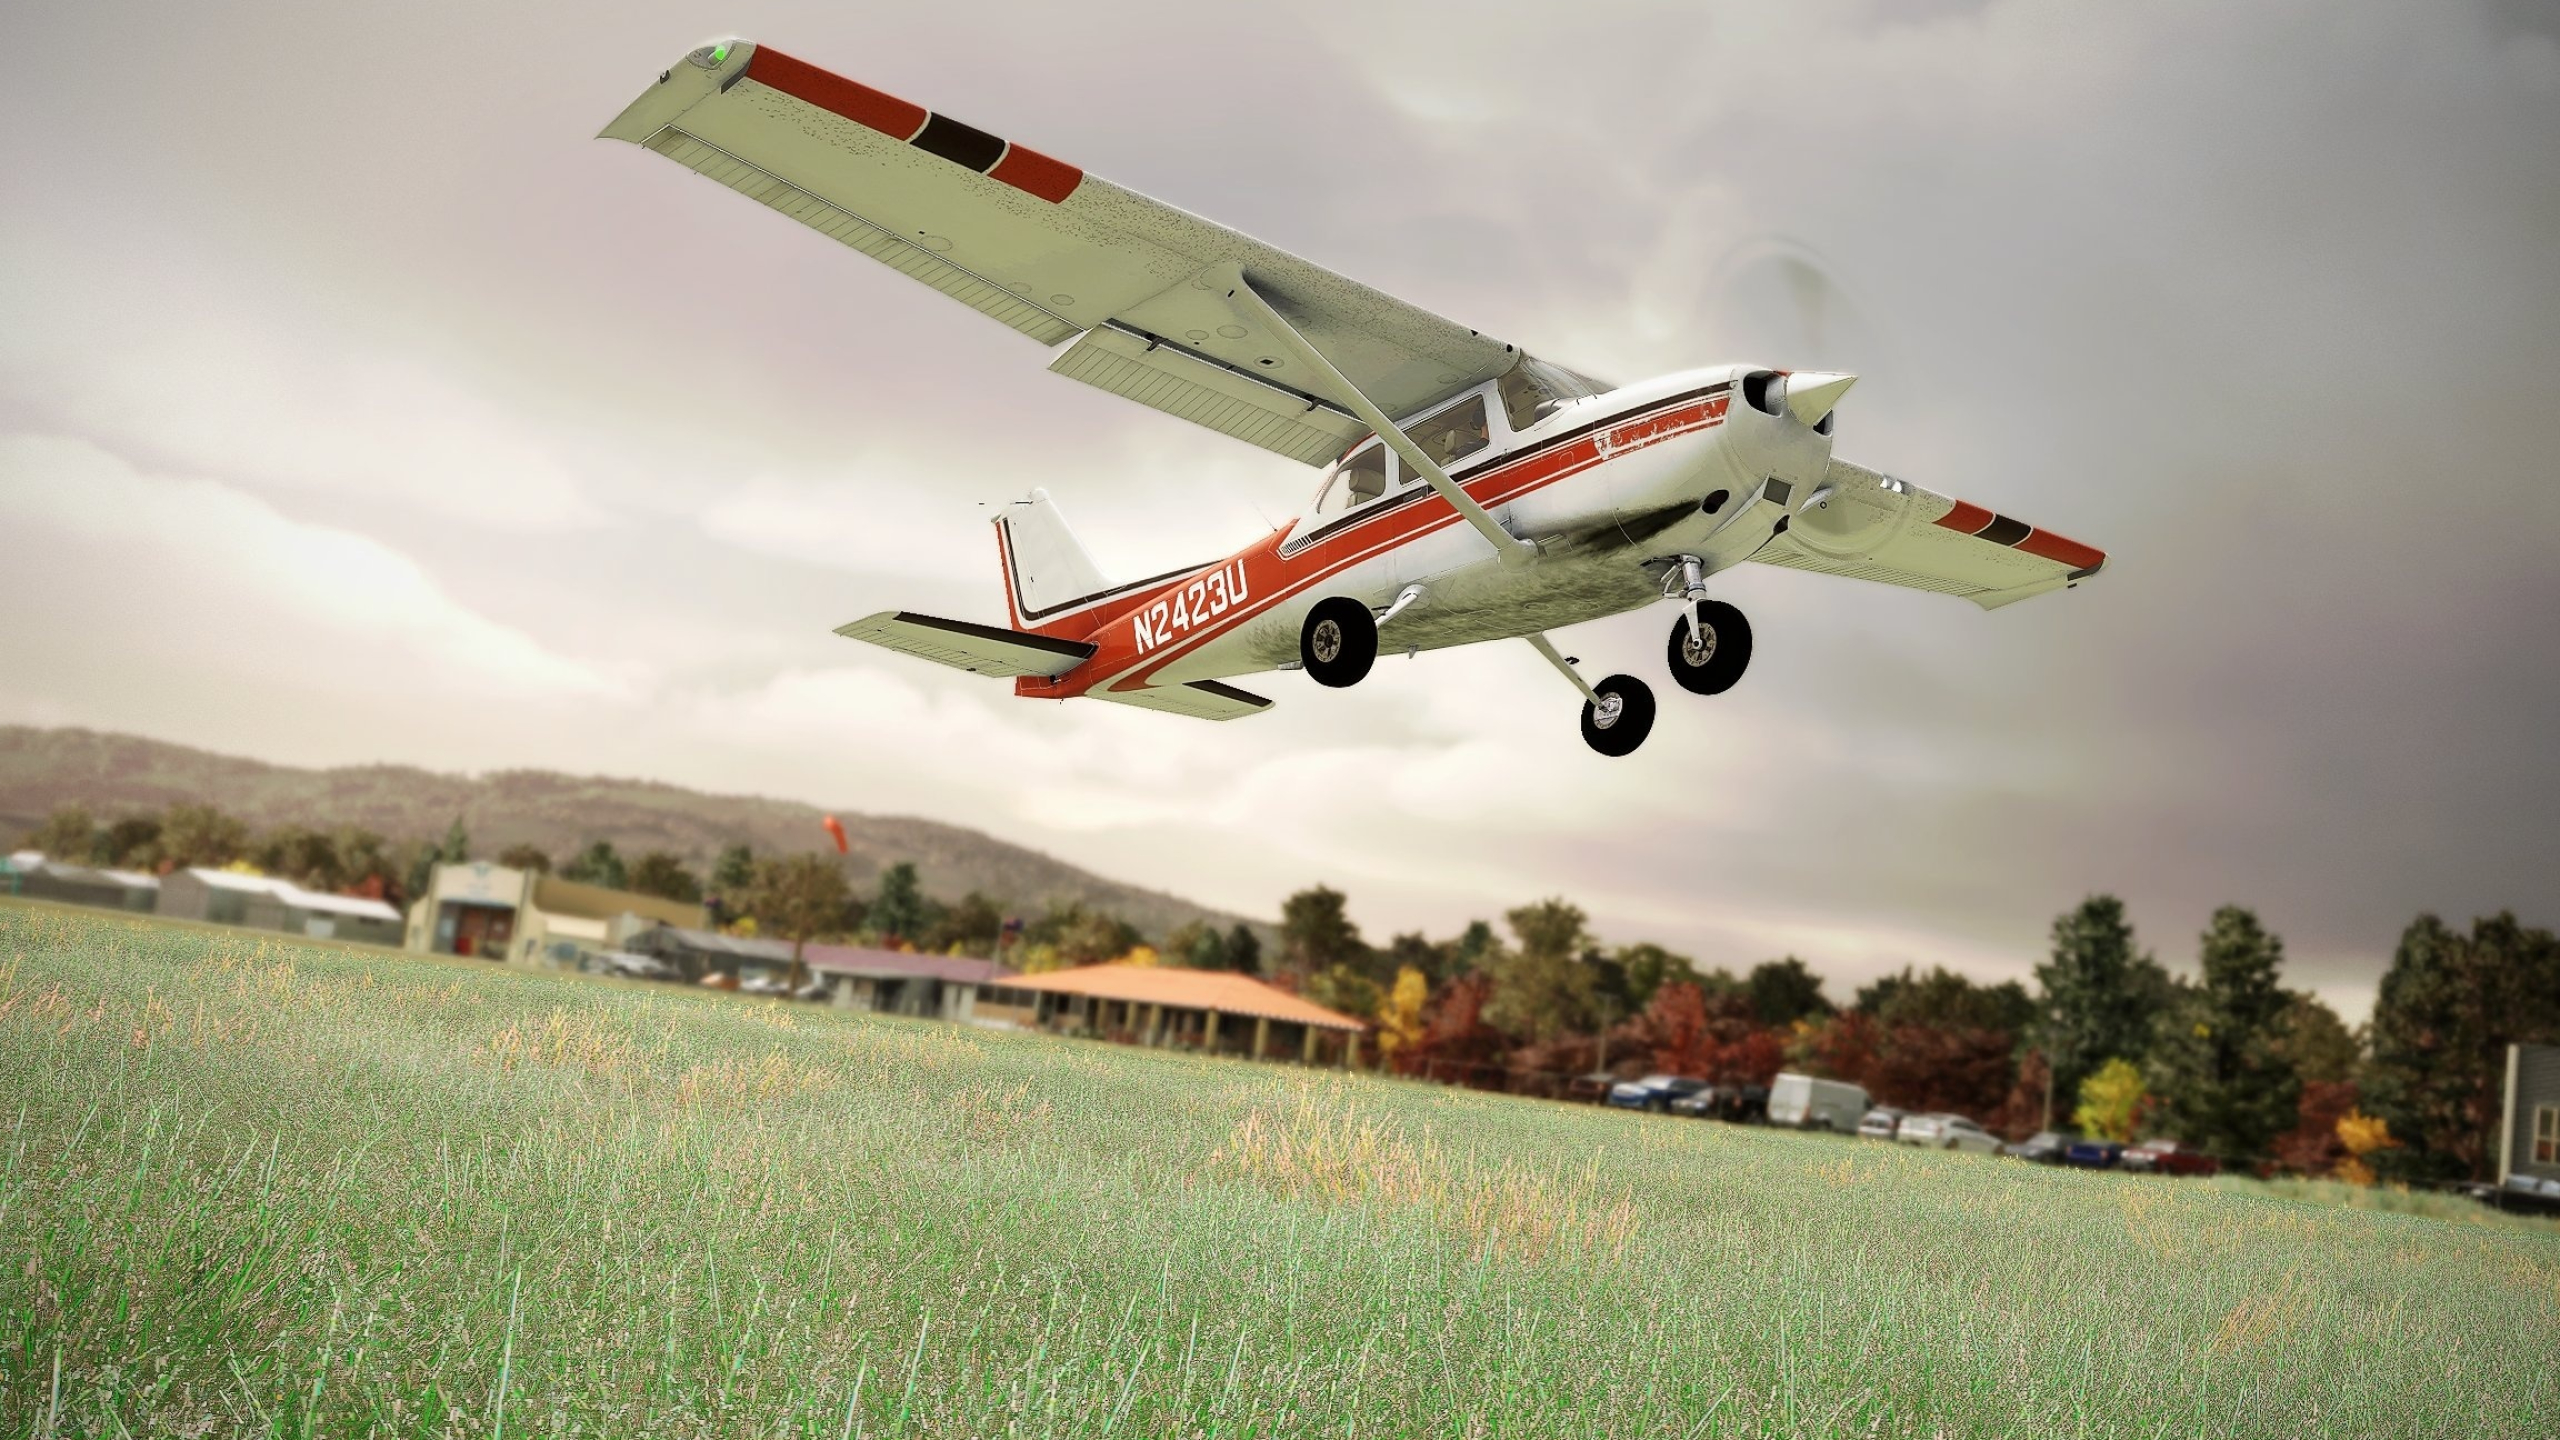 Cessna 172 Joyride, Angle of Attack, Flight Simulator Fun, Gaming Marvel, 2560x1440 HD Desktop